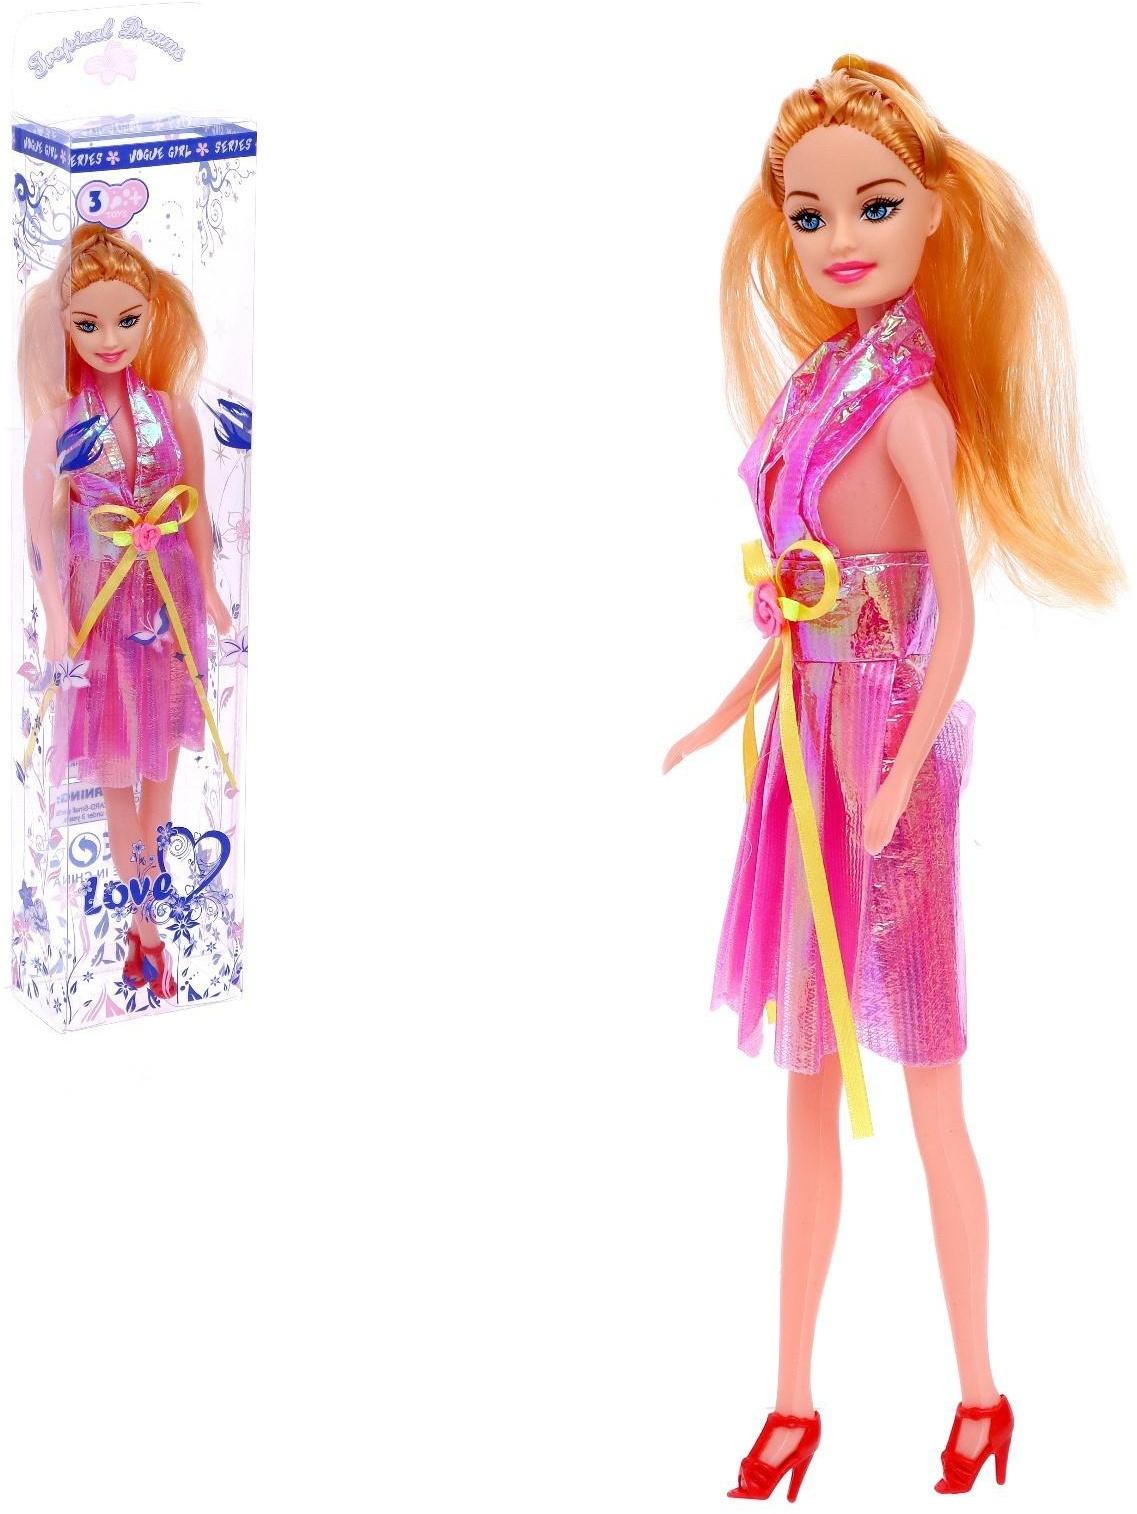 Кукла-модель в платье, цвета МИКС